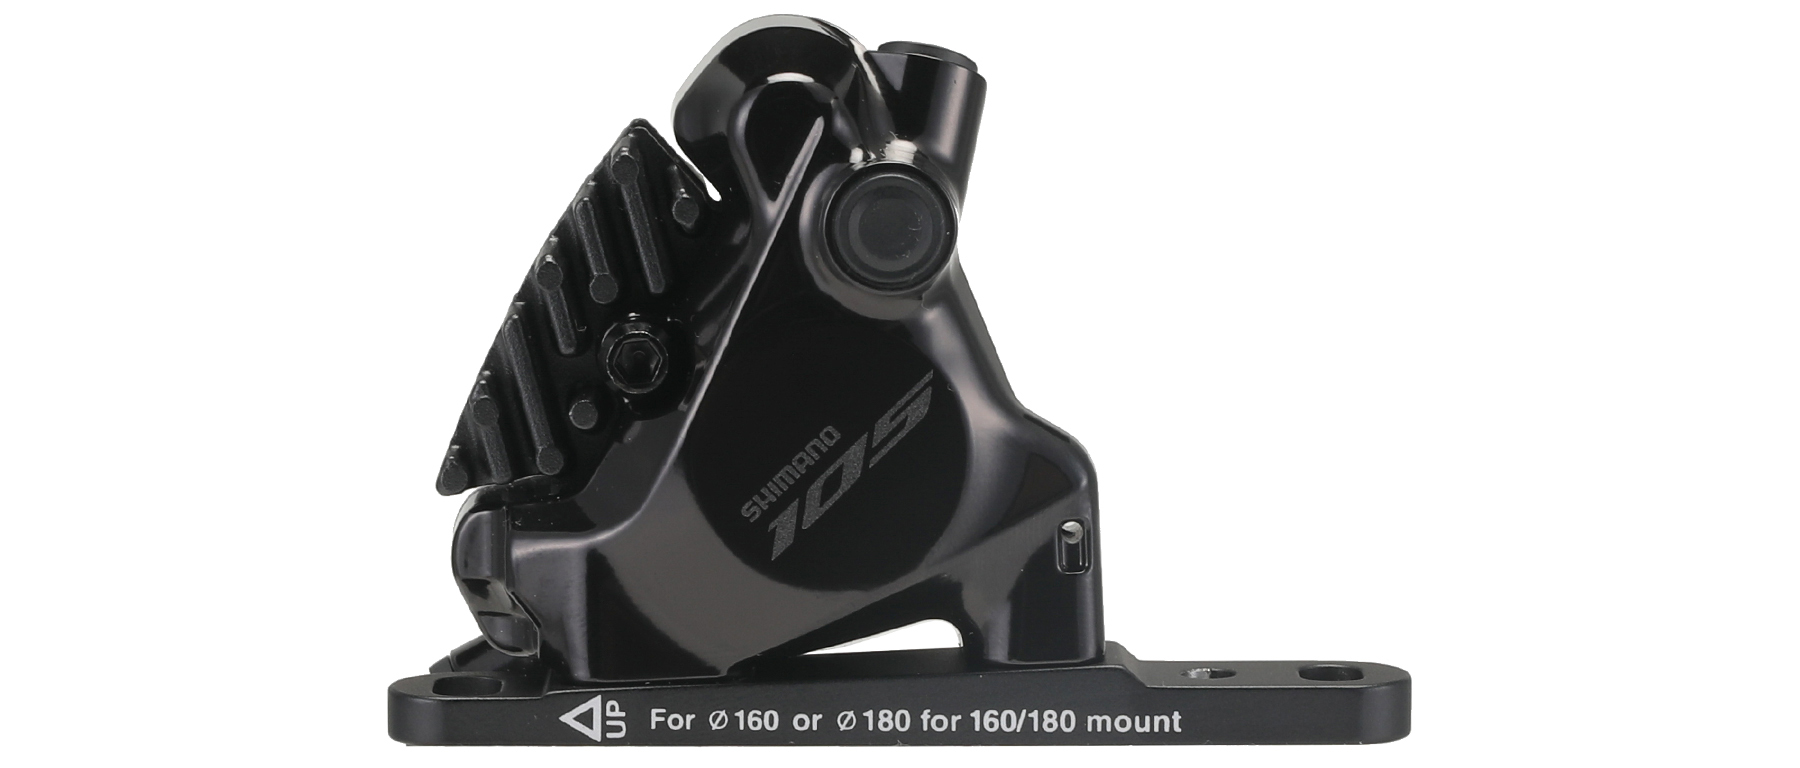 Shimano 105 ST-R7170 Di2 Dual Control Lever with Caliper